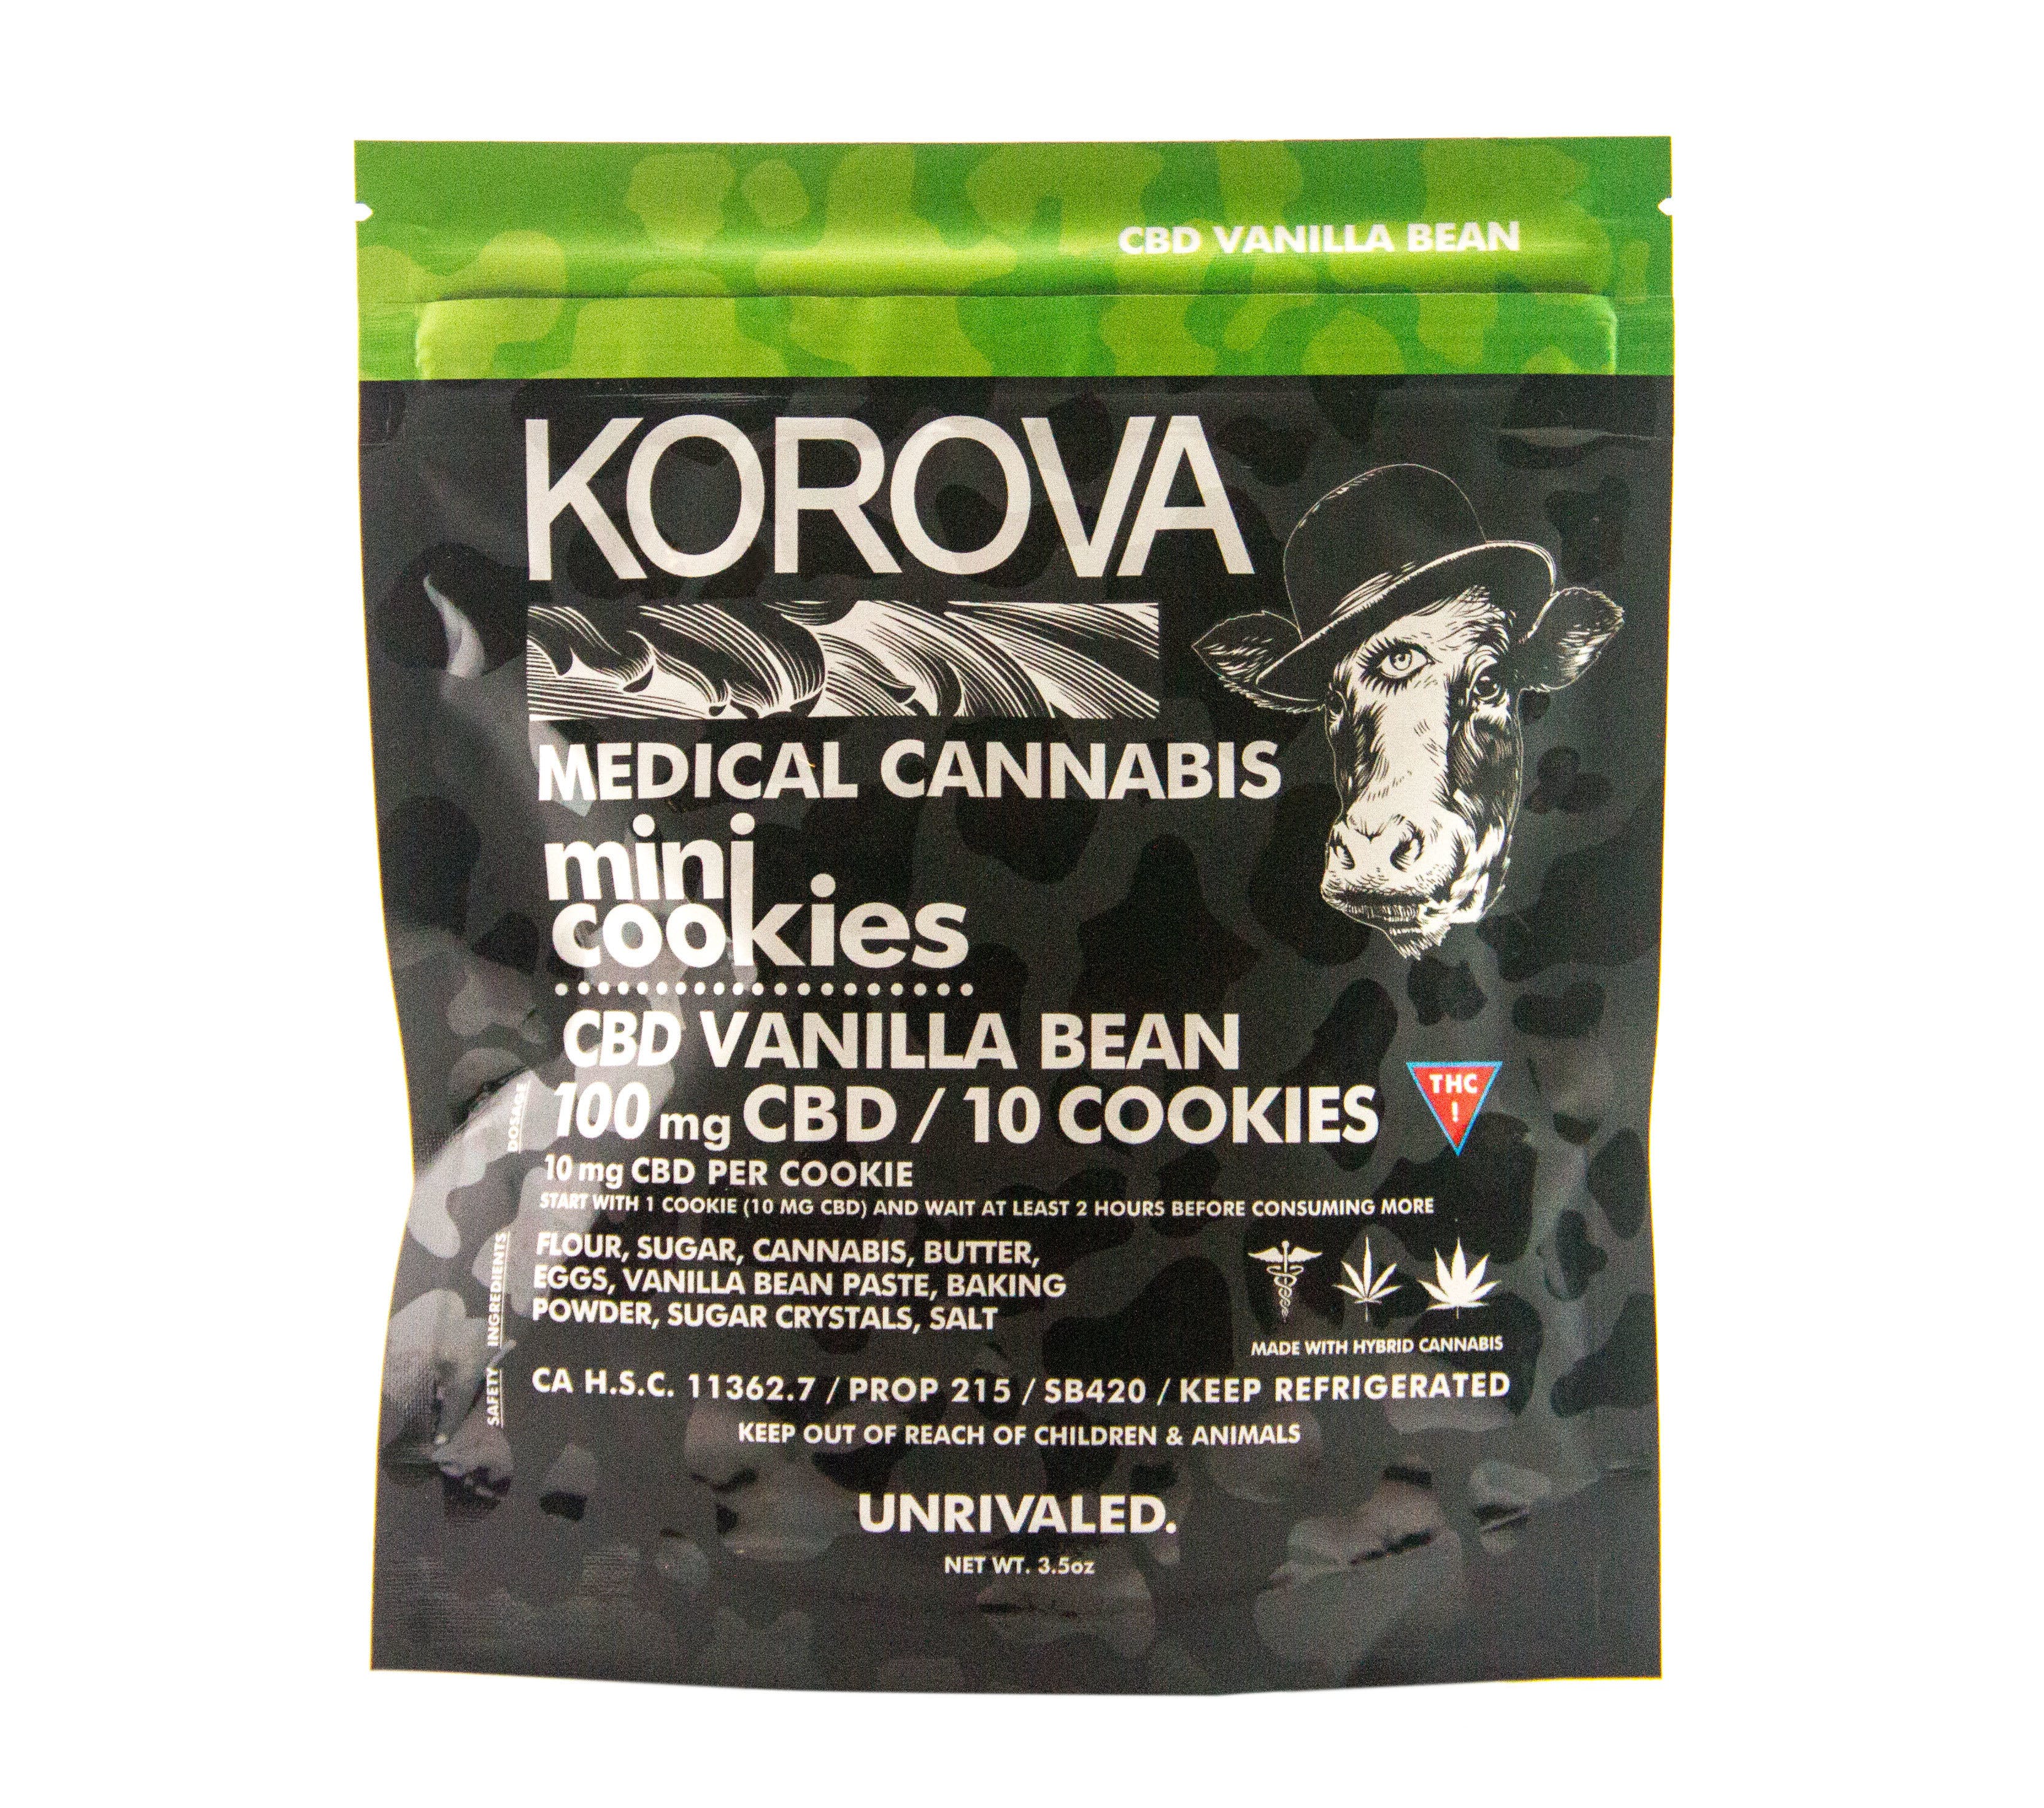 marijuana-dispensaries-1310-abbot-kinney-blvd-venice-vanilla-bean-11-mini-cookies